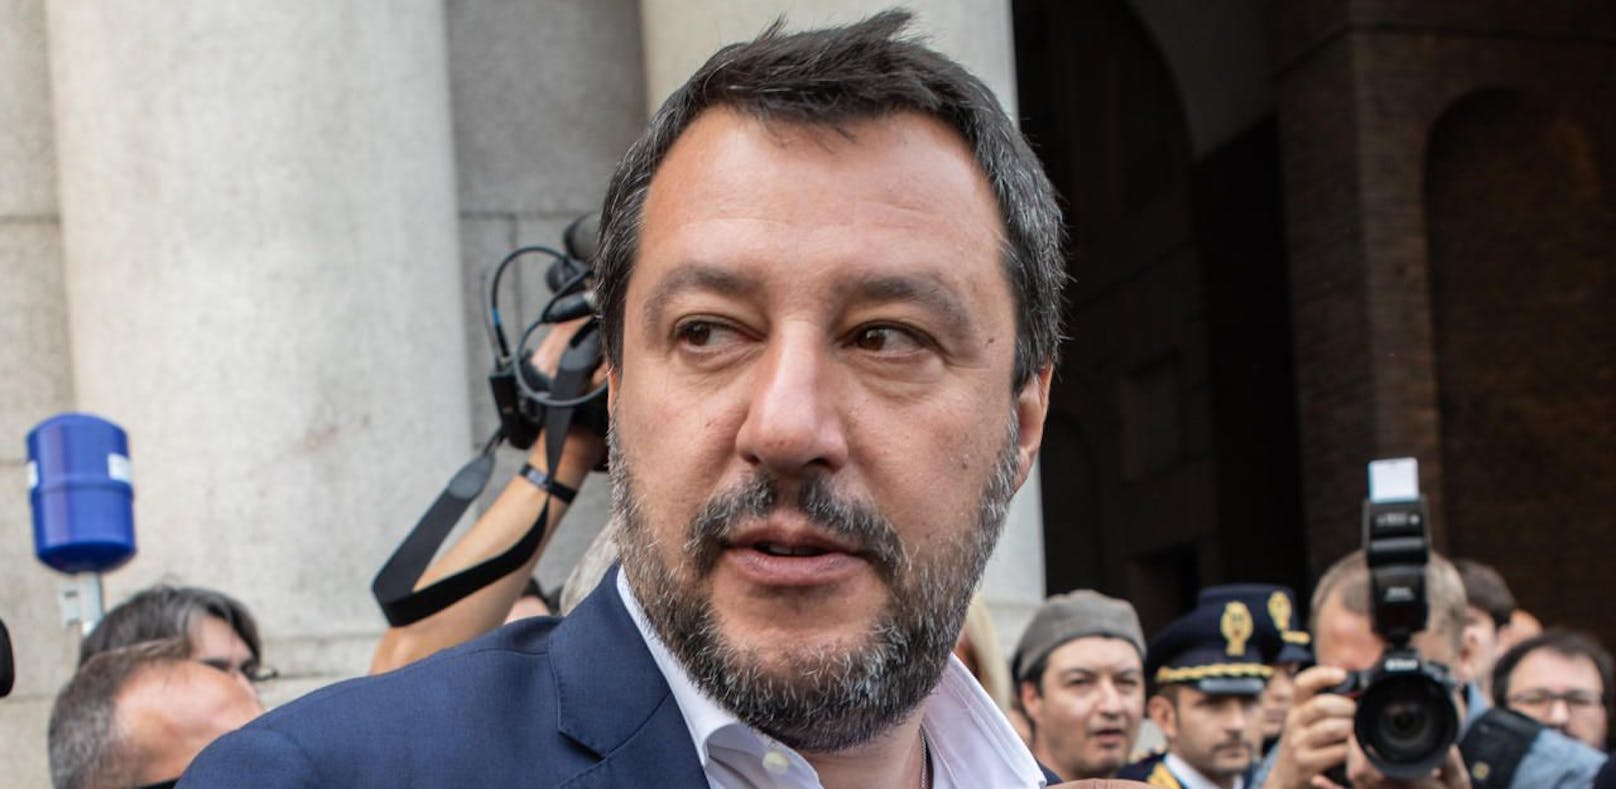 Salvini fordert so schnell wie möglich Neuwahlen